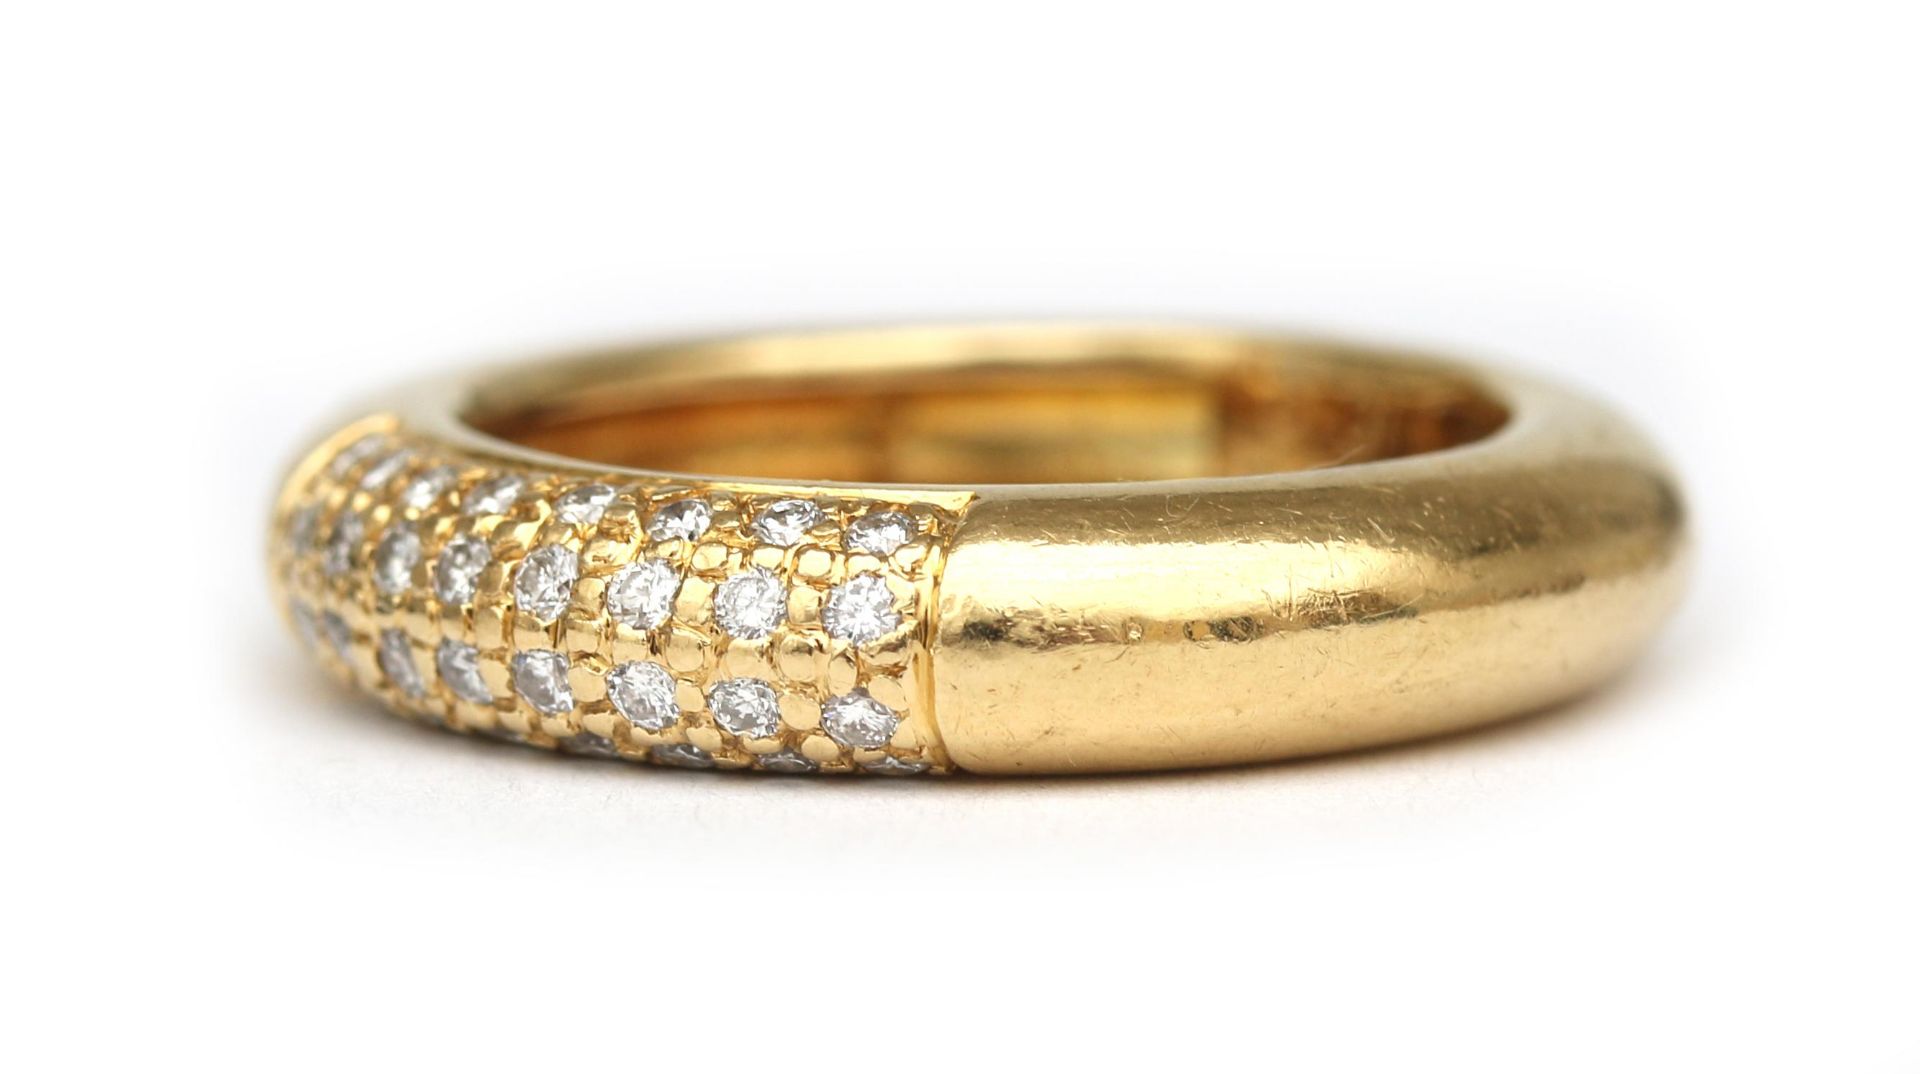 An 18 karat gold diamond ring - Image 2 of 3